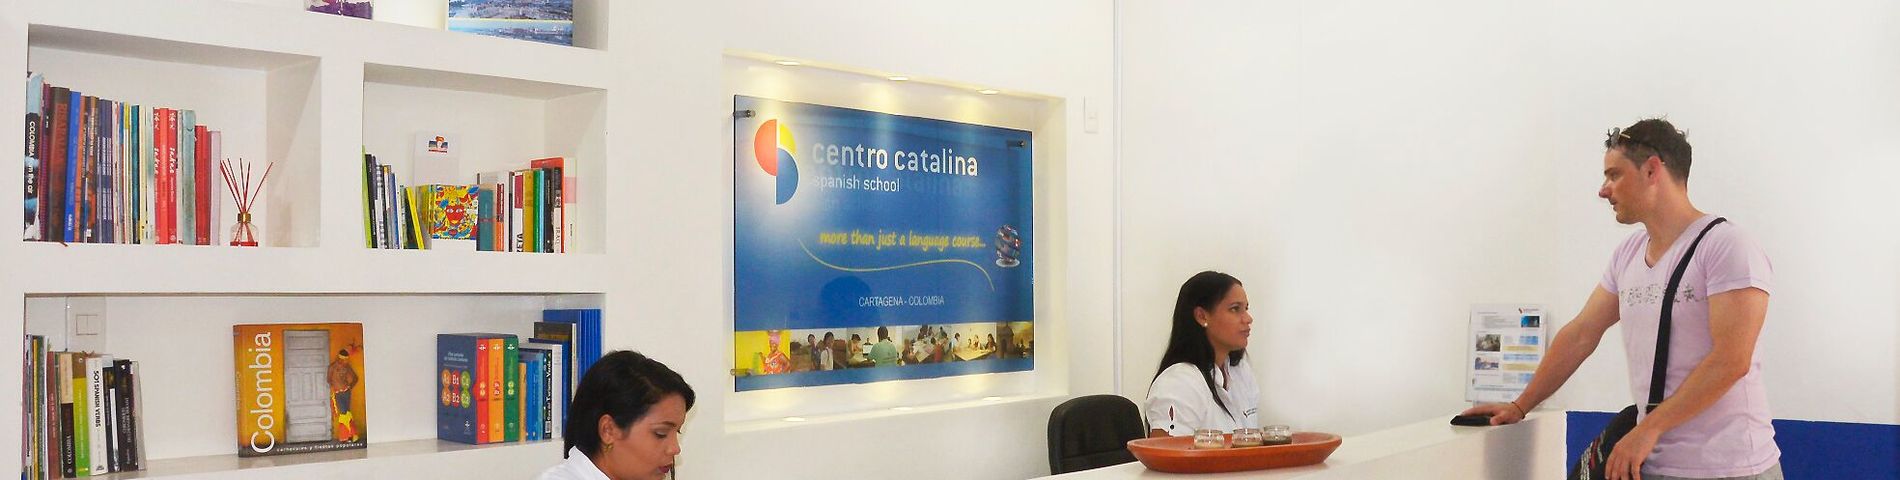 Centro Catalina immagine 1